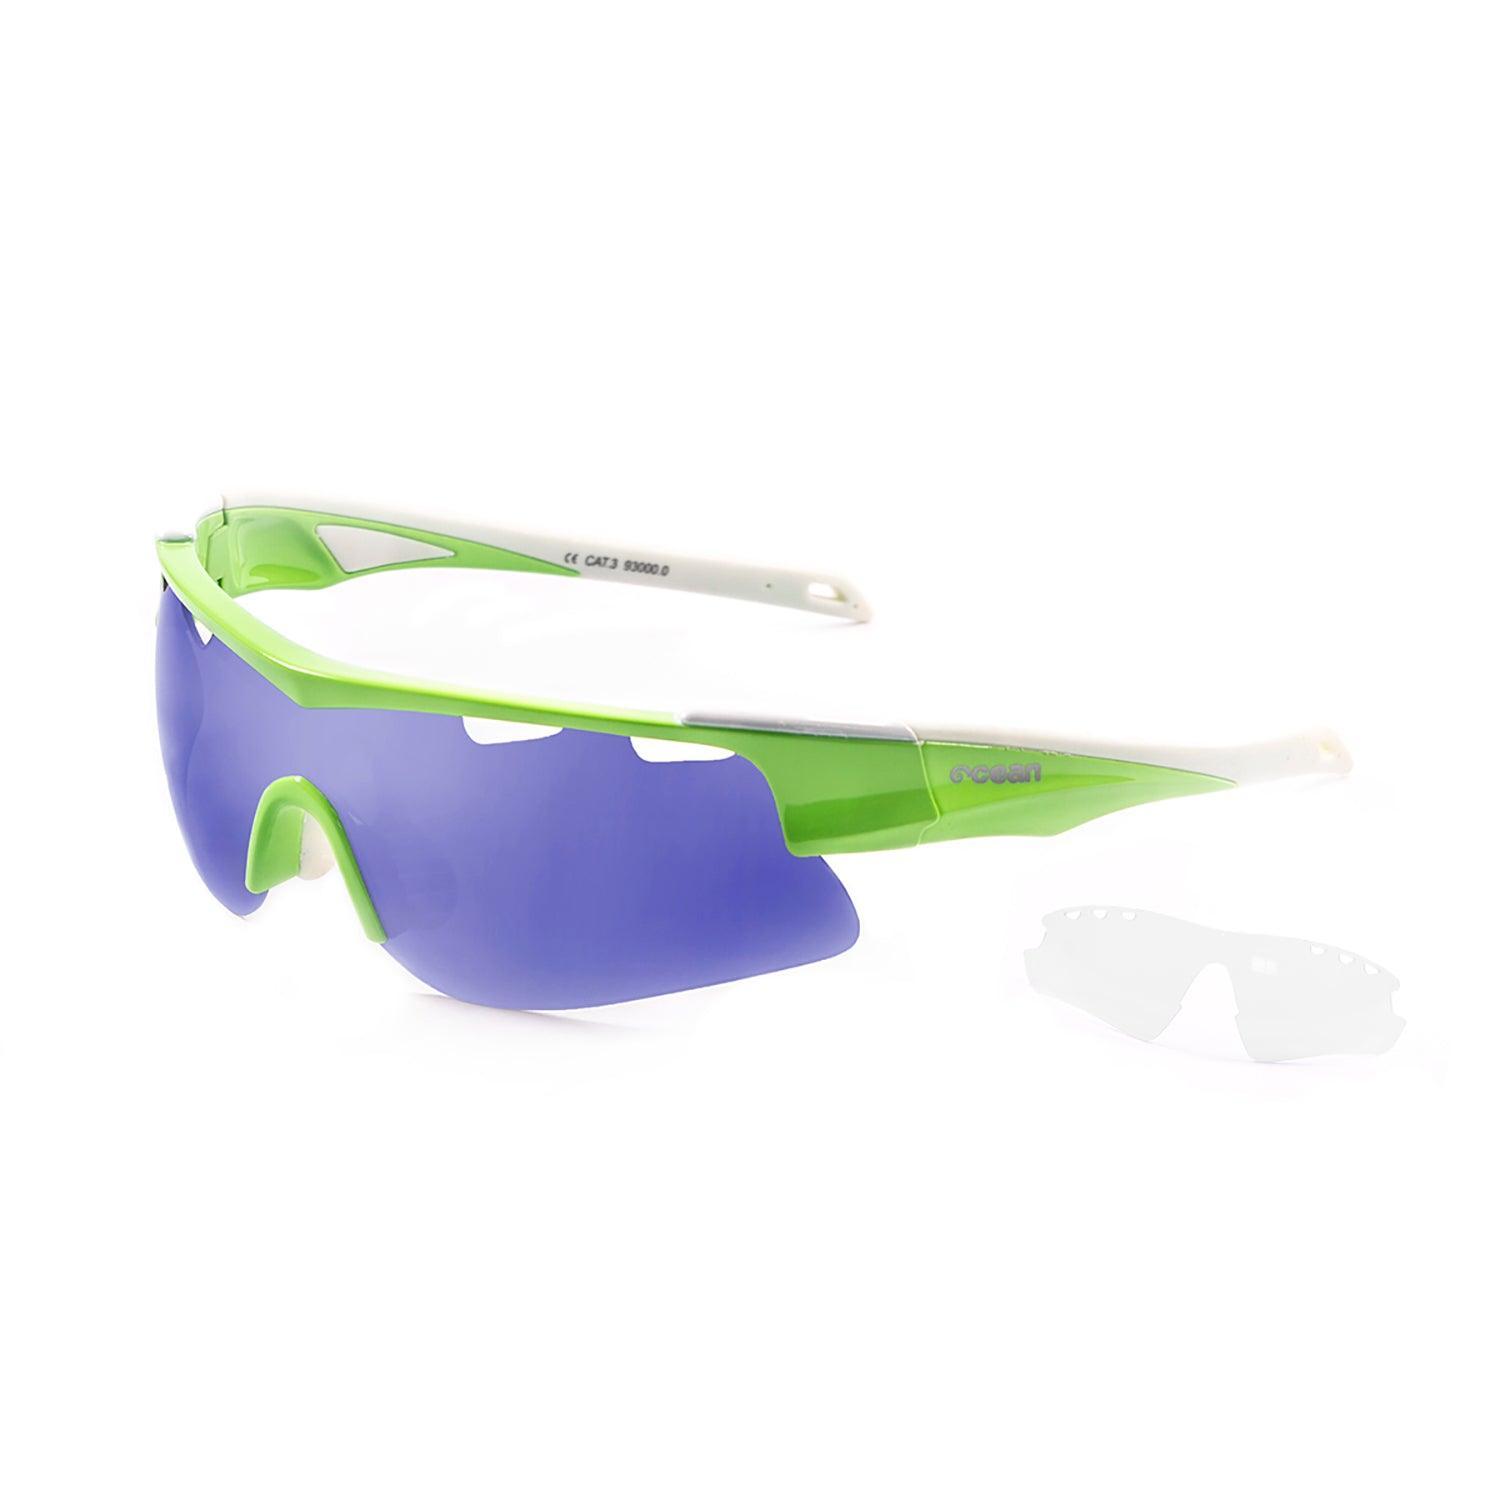 Floating Polarized Fishing Sunglasses for Men Surfing Kayaking UV